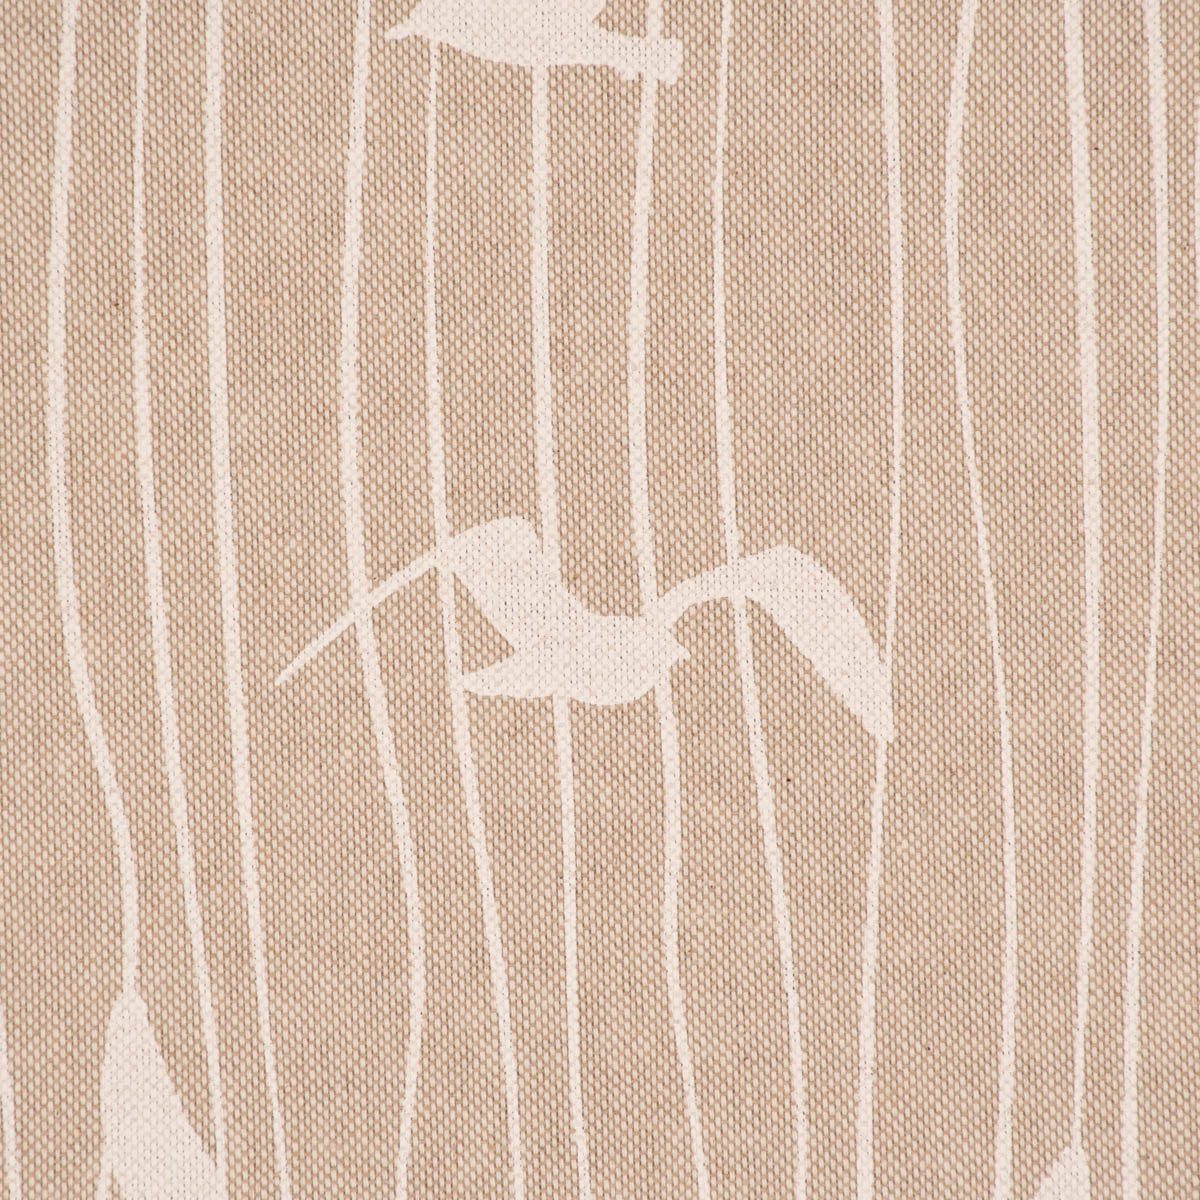 Iconic SCHÖNER Vorhang (1 St), handmade, Germany, wei, natur Vorhang Seagull in LEBEN. LEBEN., Stripe Smokband blickdicht, made Möwen SCHÖNER Streifen Baumwolle, vorgewaschen